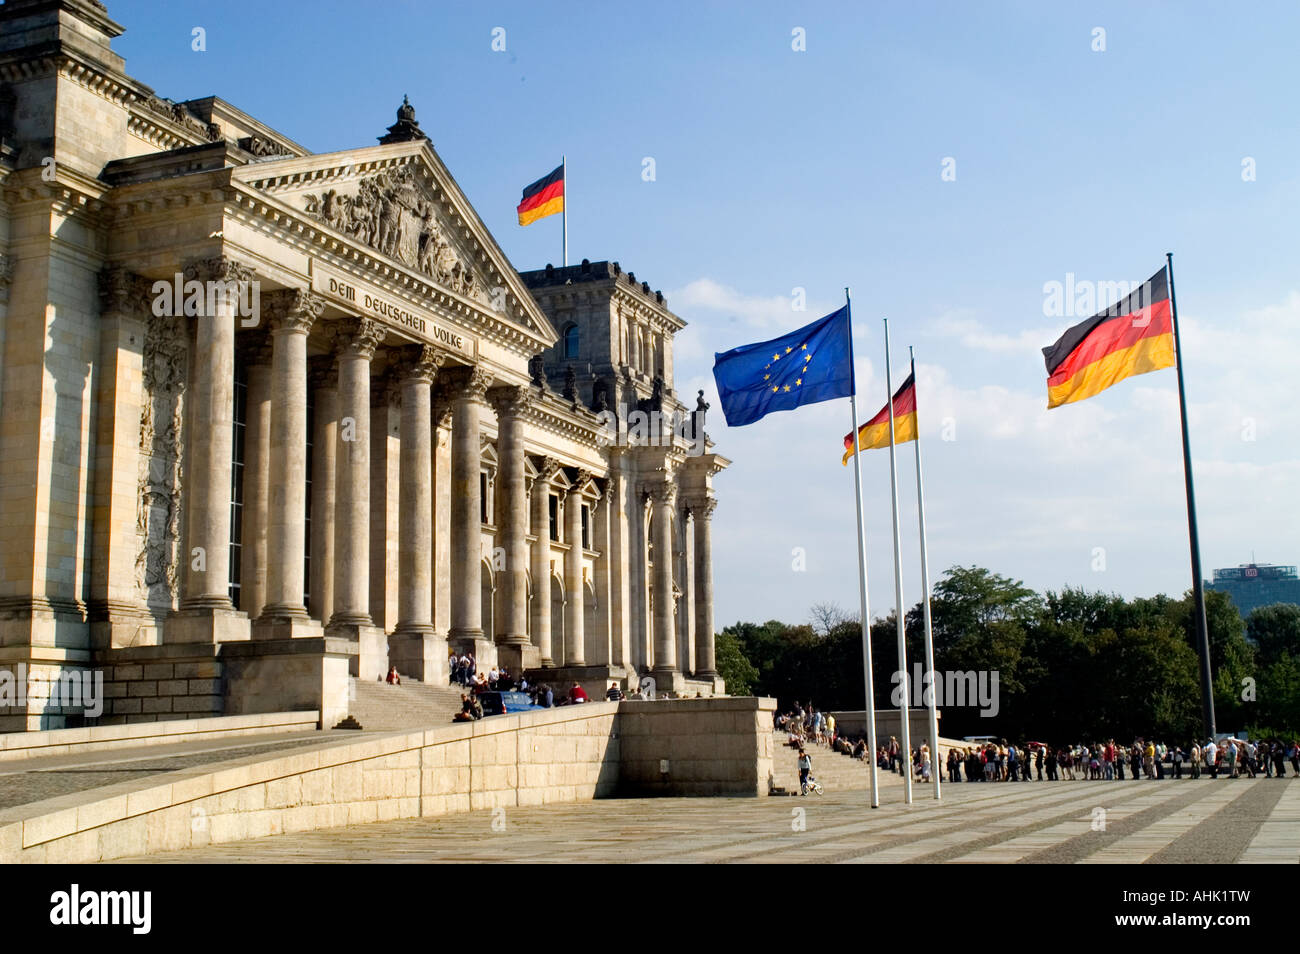 Reichstag, Reichstagsgebäude, Berlin qui abrite le Bundestag, la chambre basse du Parlement allemand, construit en 1894. Allemagne Banque D'Images